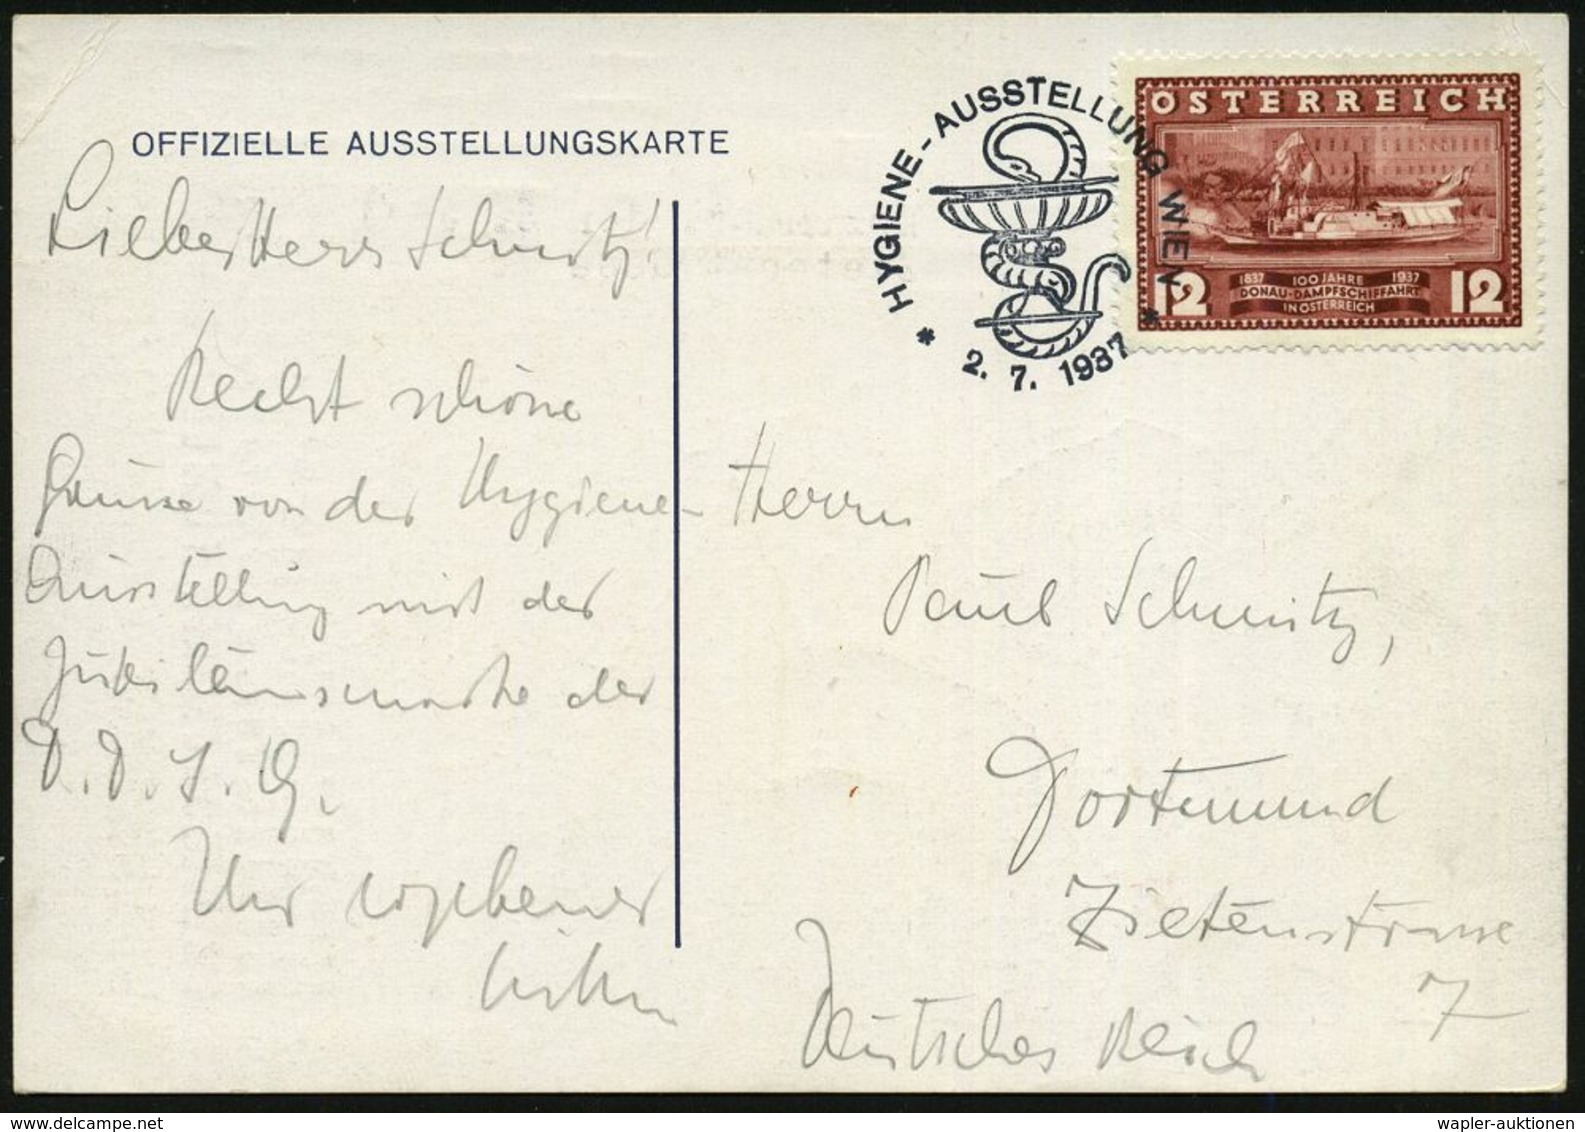 MEDIZINISCHE AUSSTELLUNGEN & KONGRESSE : ÖSTERREICH 1937 (2.7.) SSt.: HYGIENE-AUSSTELLUNG WIEN = Schlange (u. Schale) Au - Médecine